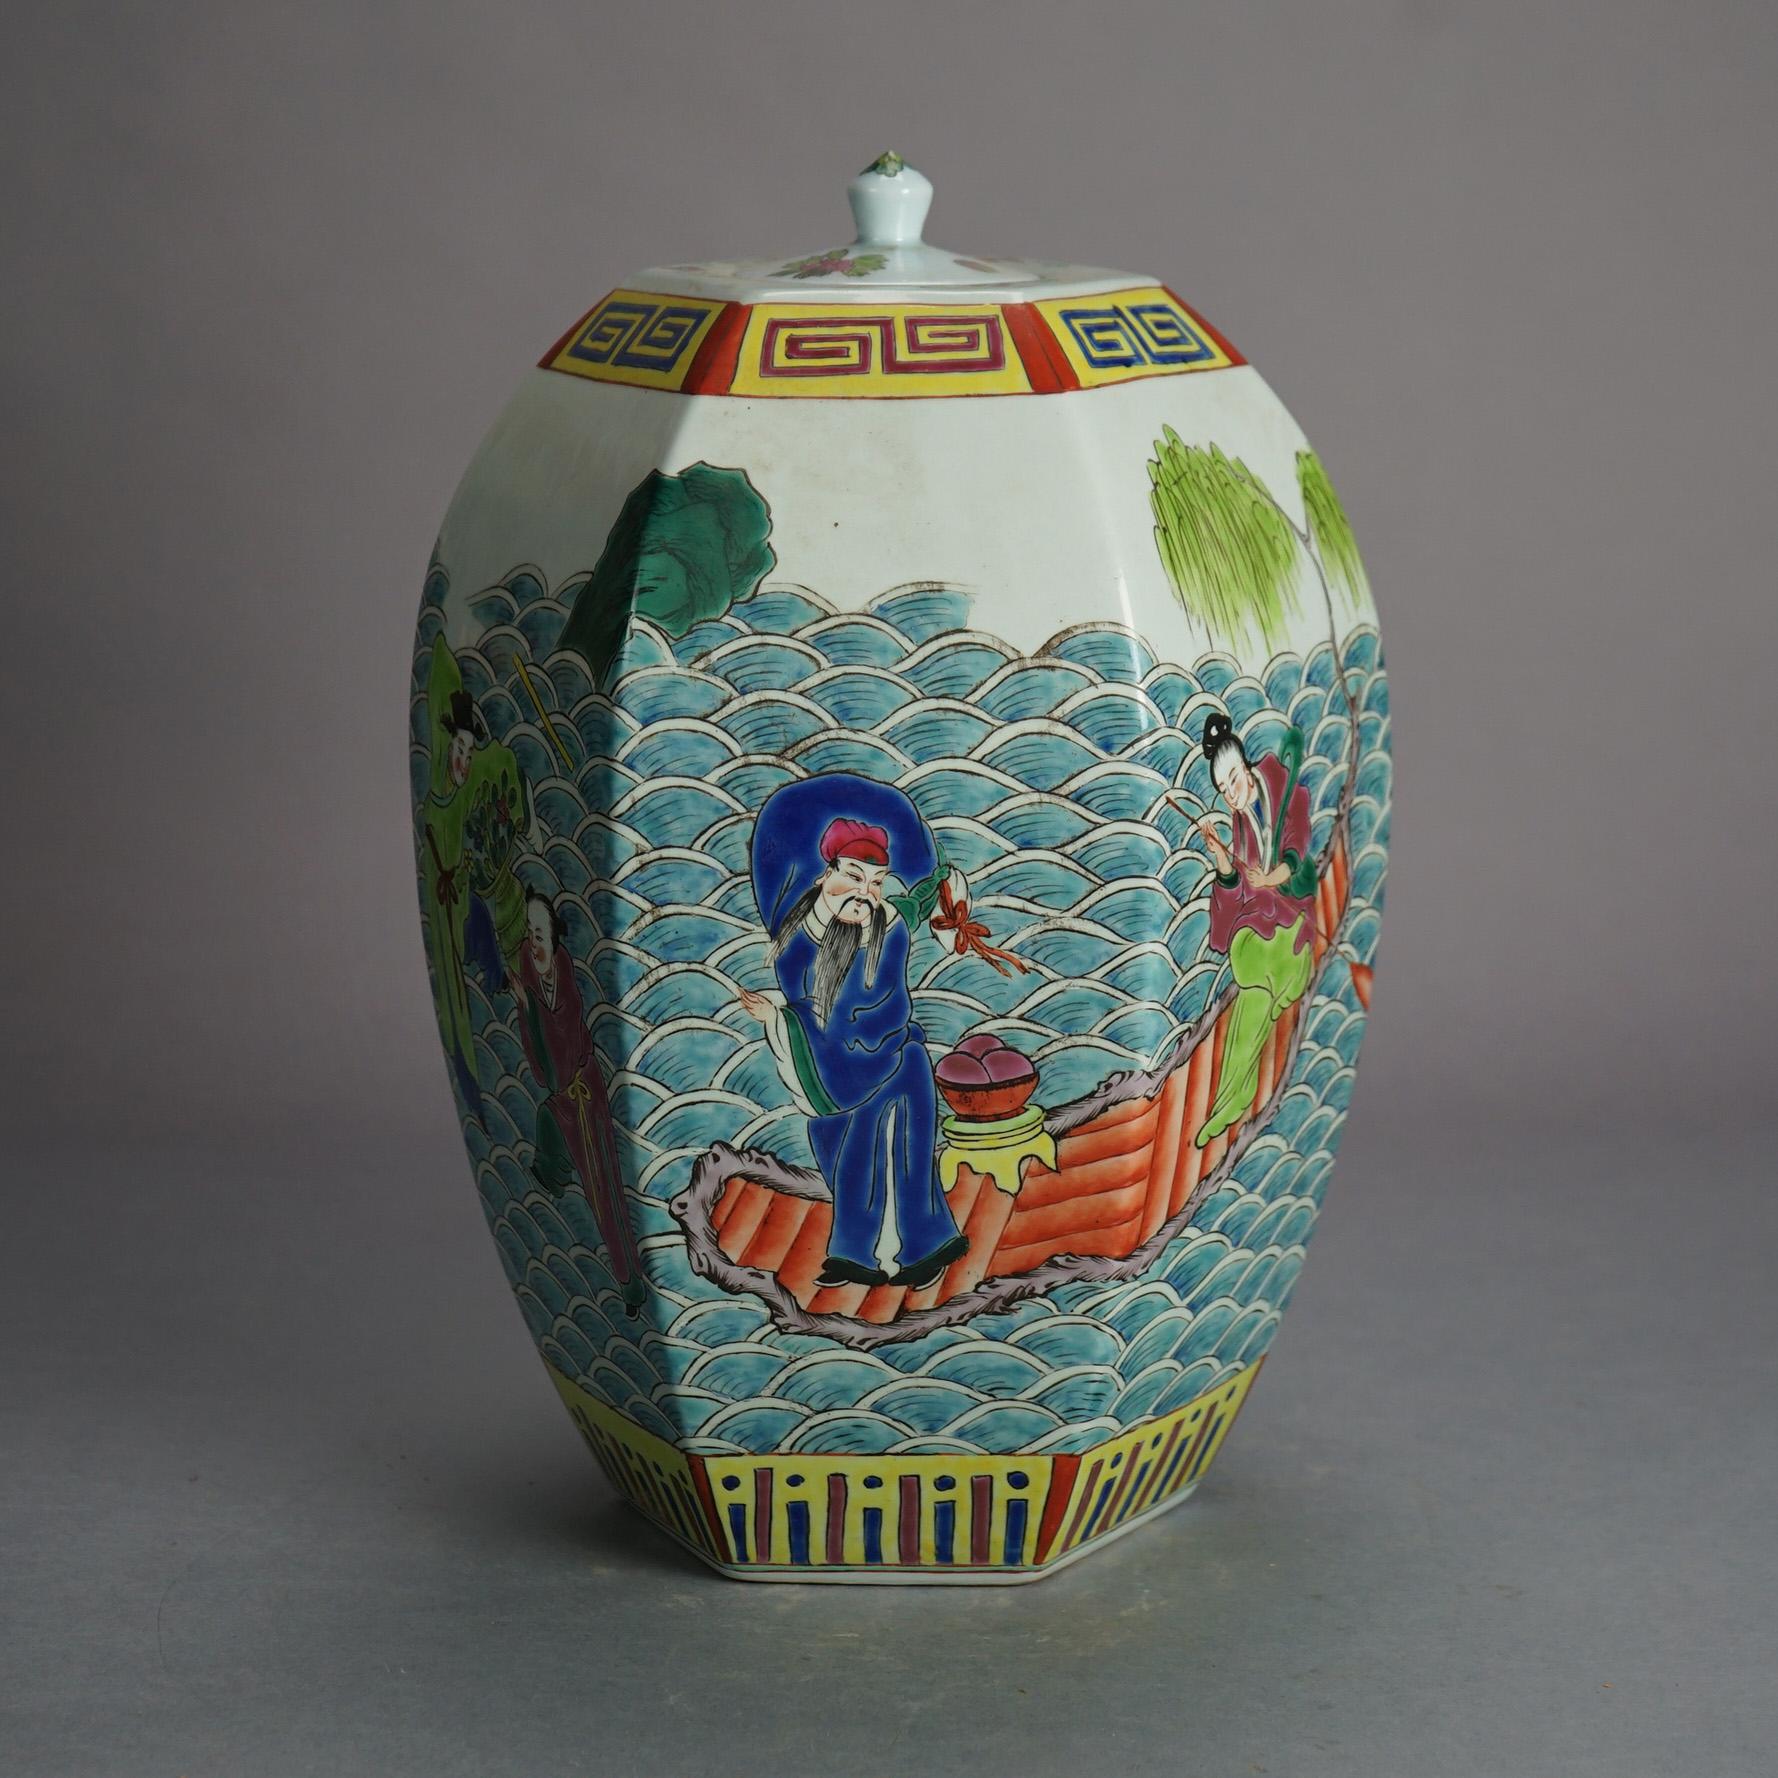 Pot à couvercle figuratif et facetté en porcelaine émaillée de Chine avec scène de genre 20e siècle

Mesures - 14 